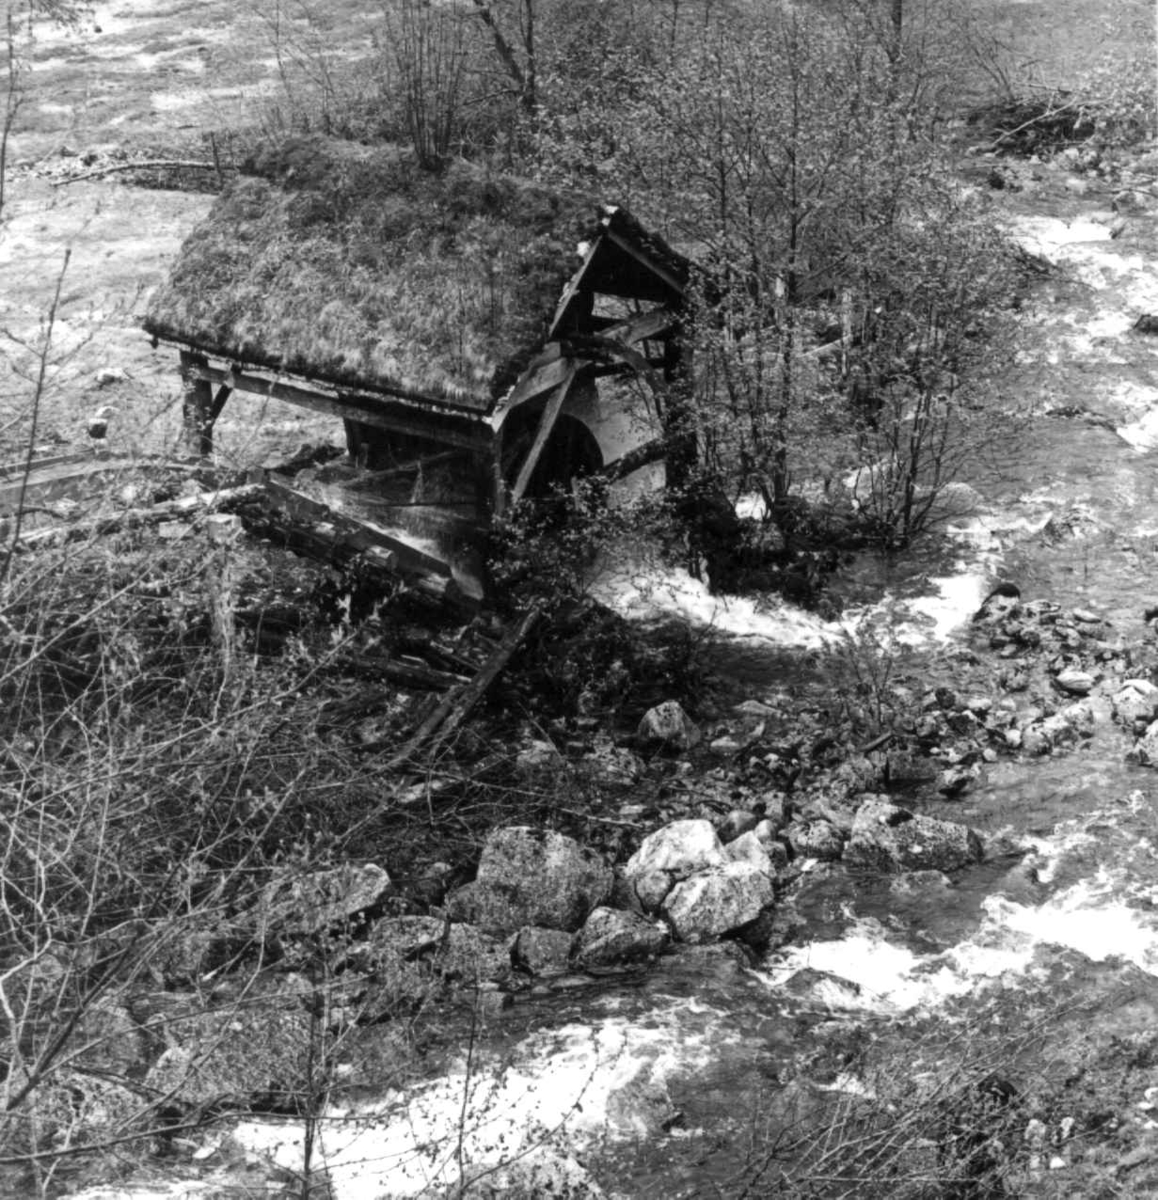 Stamping av vadmel. Vadmelsstampe. Kvæstad, Suldal, Rogaland 1970.